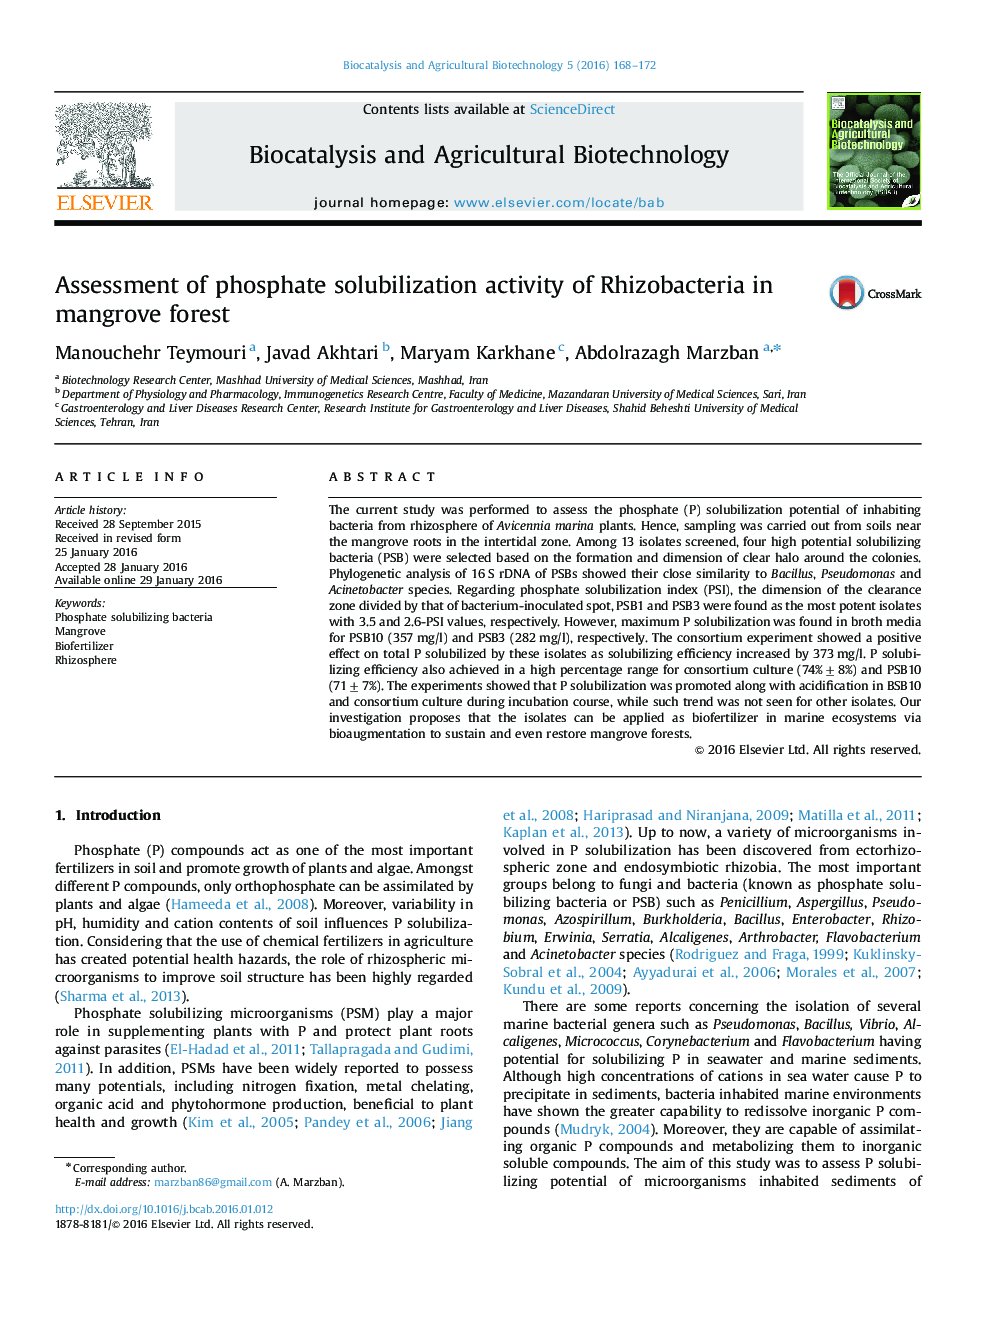 ارزیابی فعالیت محلول سازی فسفات ریزوباکتریا در جنگل های مانگرو